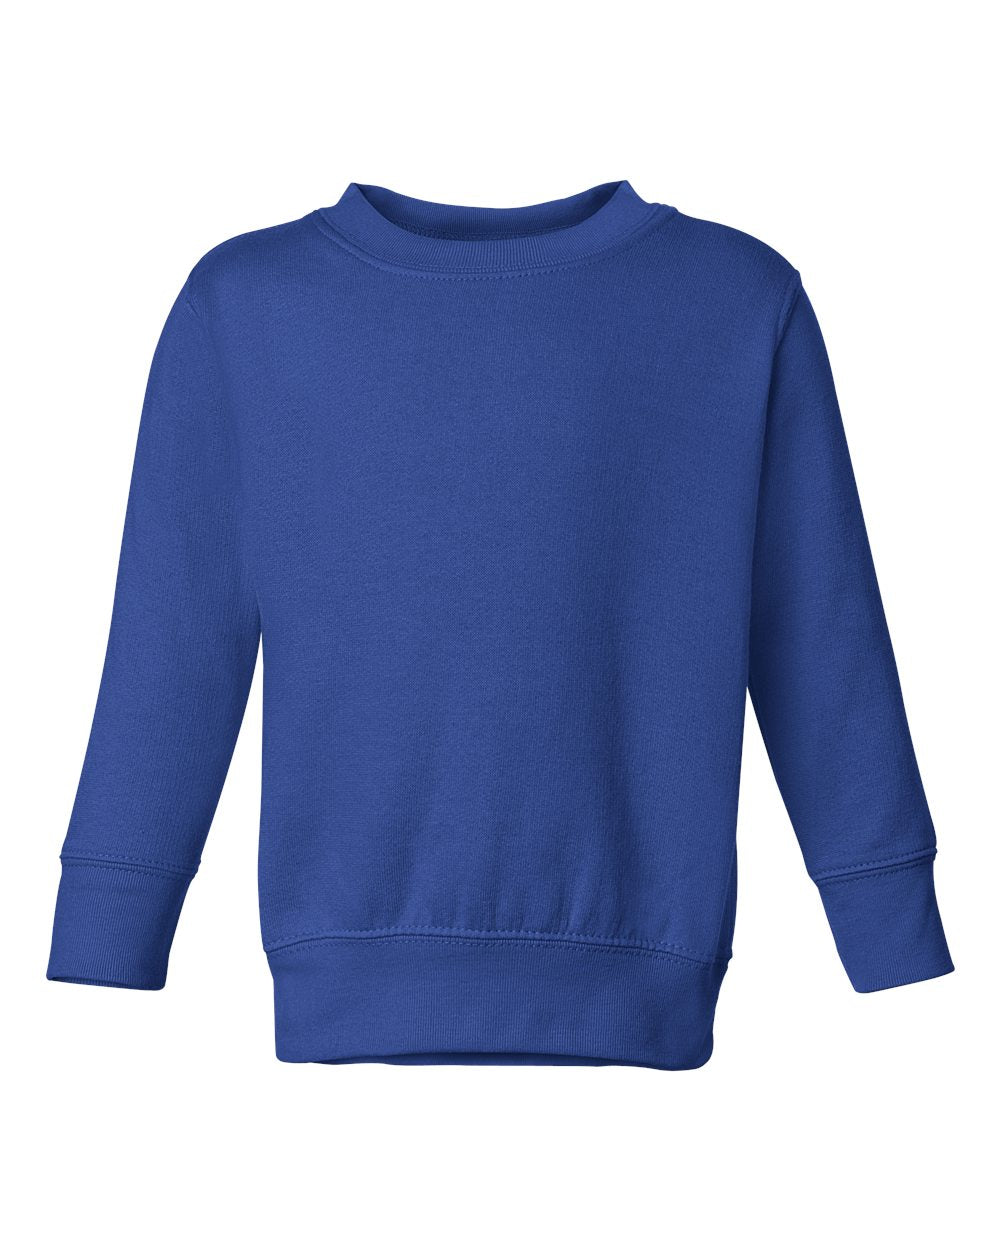 Toddler Crewneck Sweater